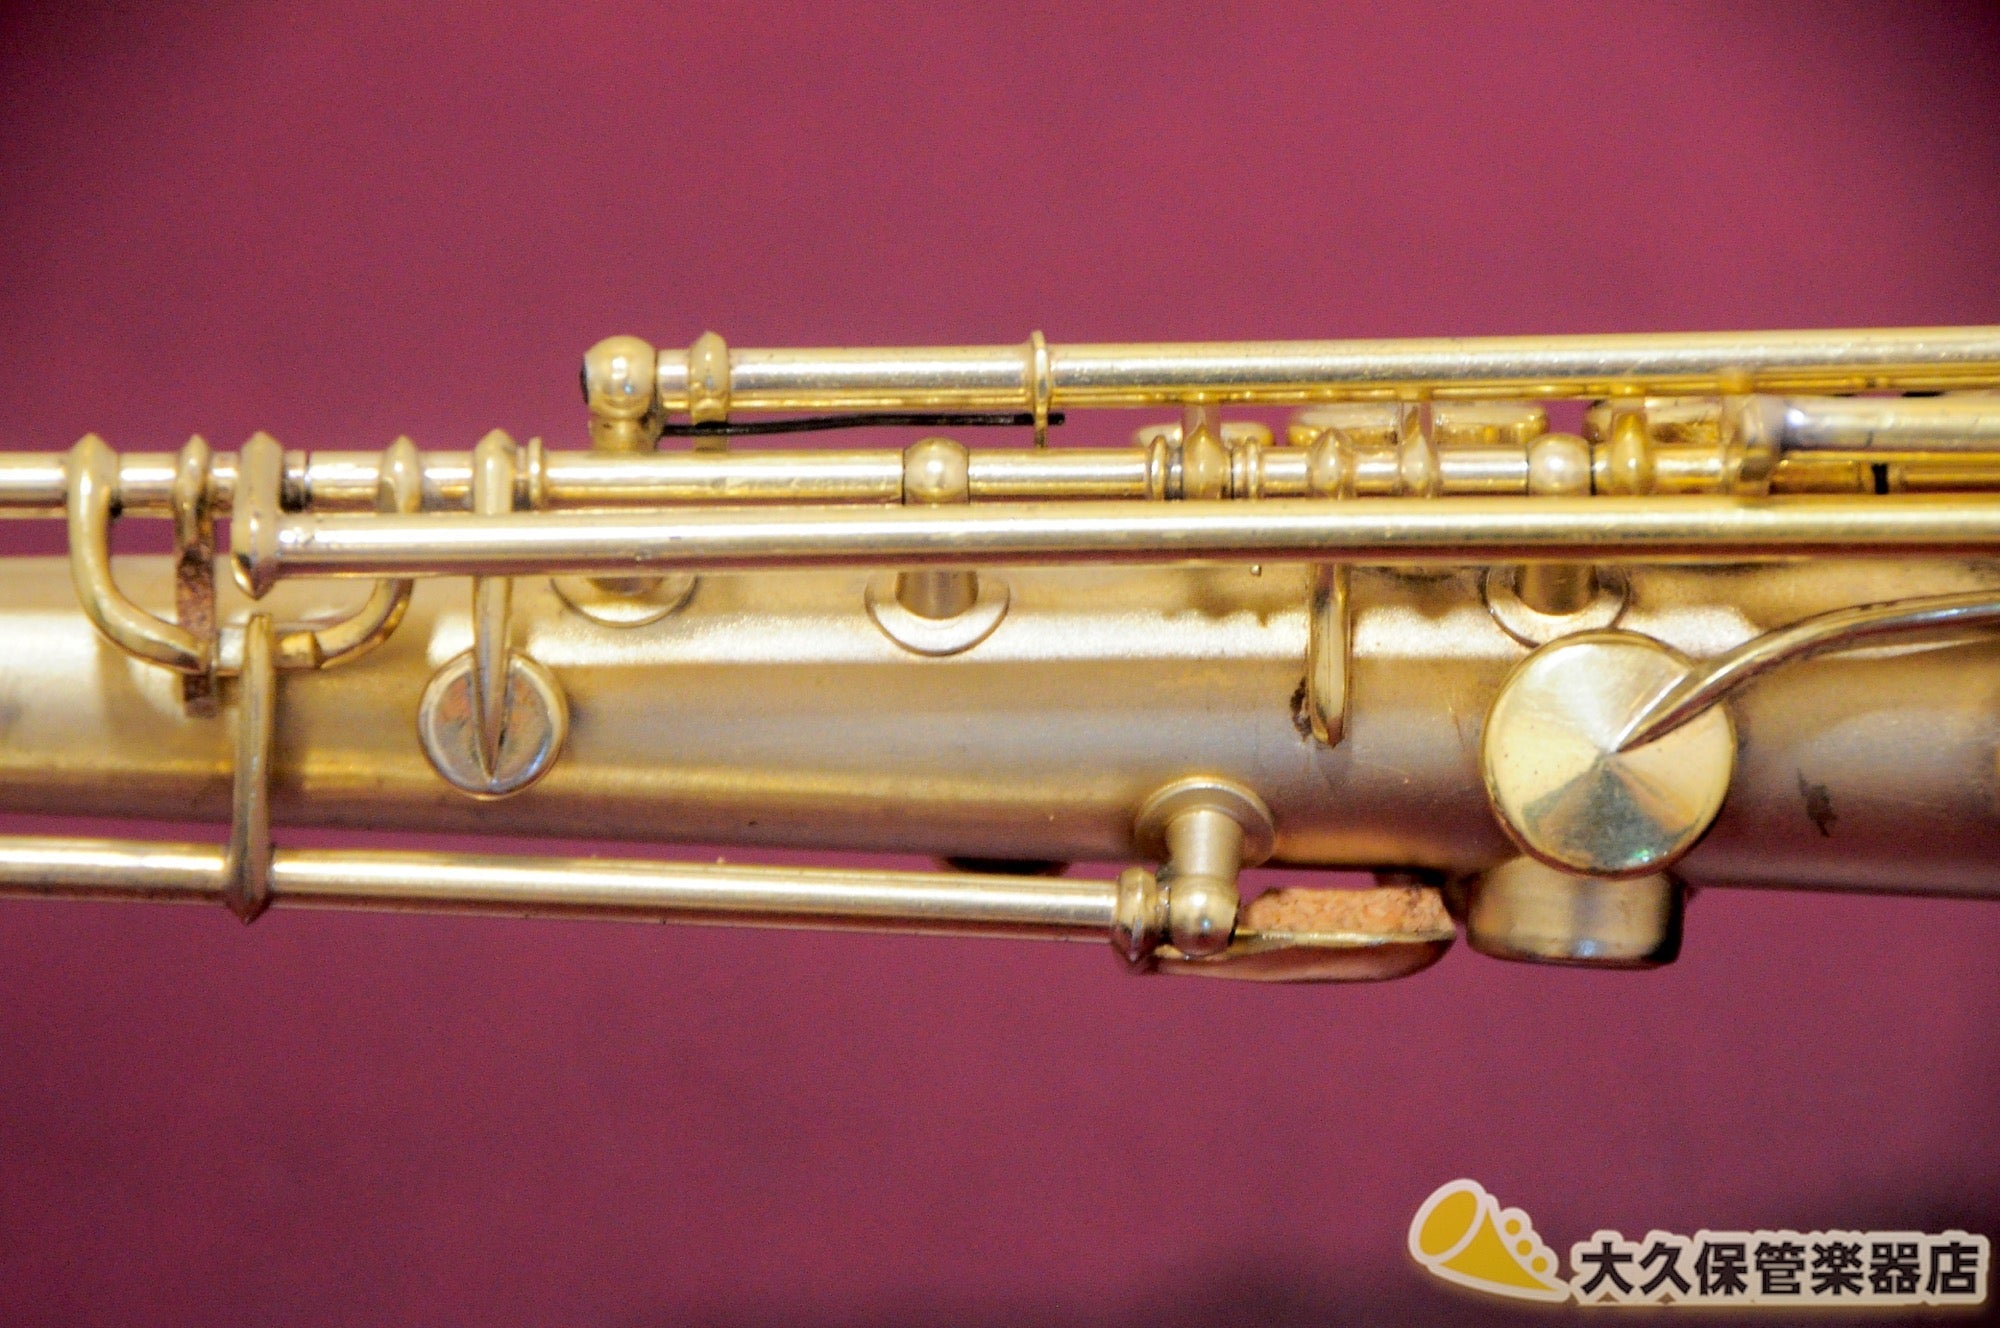 キング　No.1002 Satin Gold-plated ソプラノサクソフォン